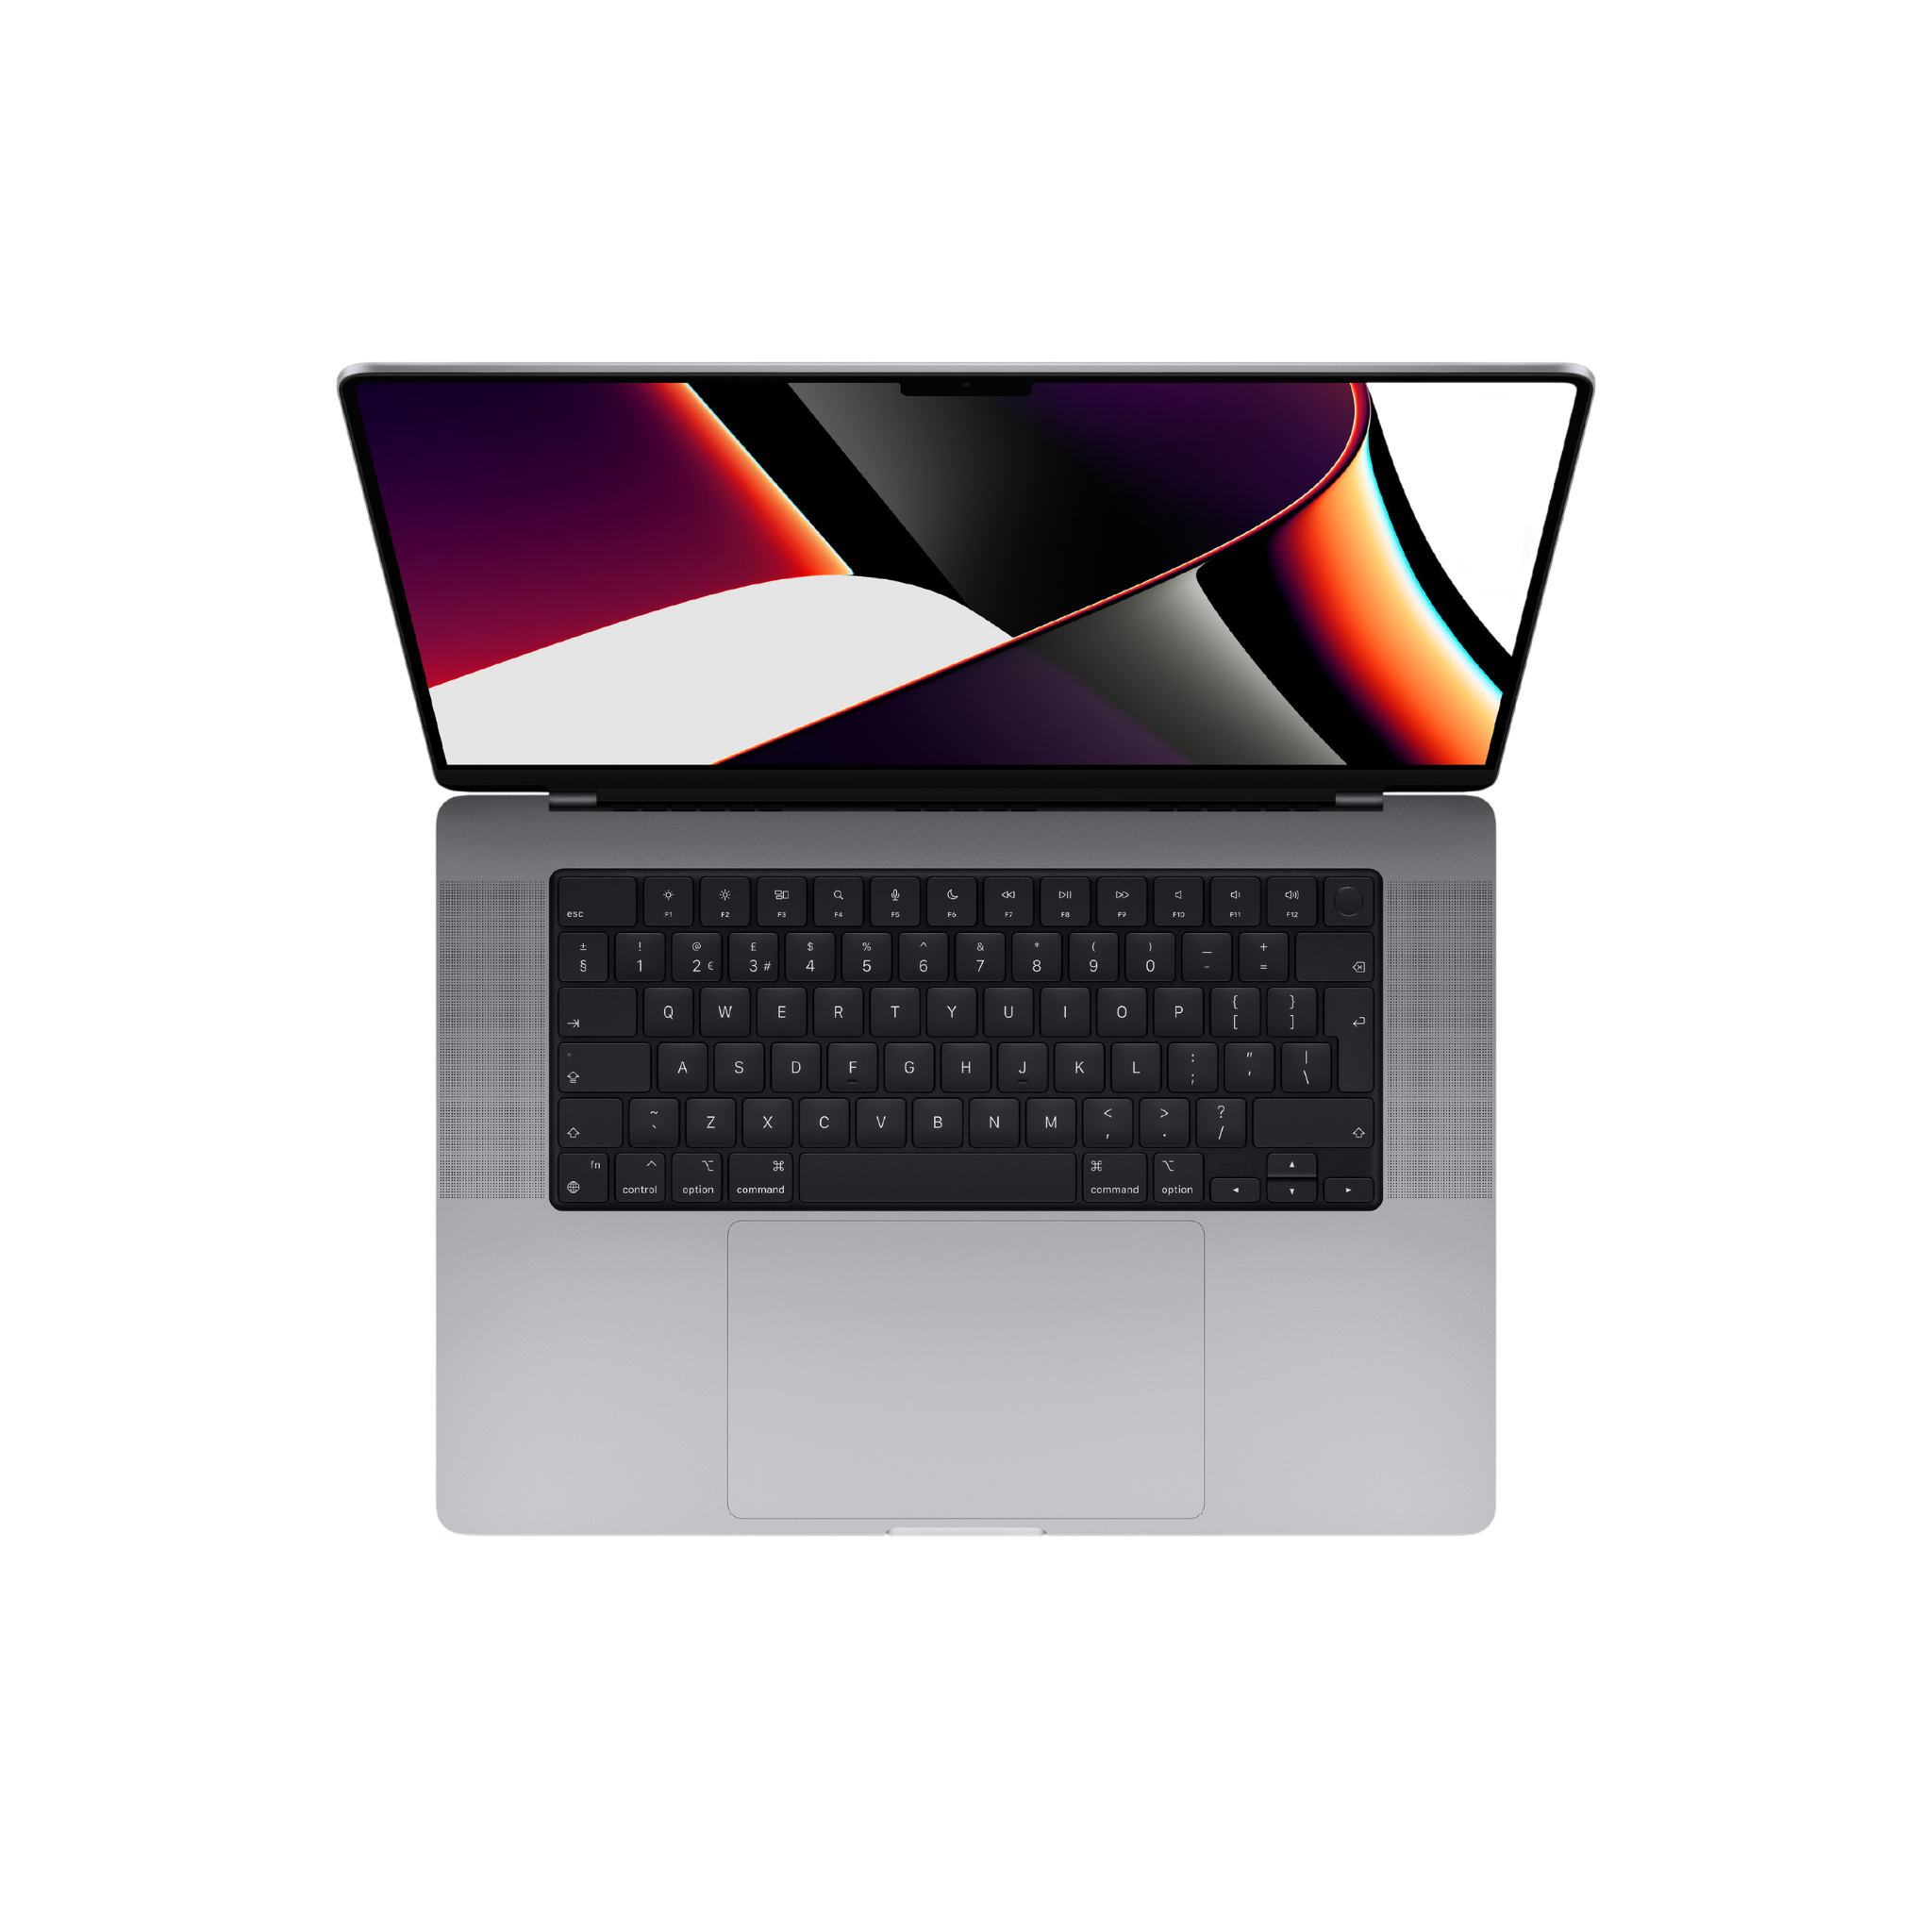 MacBook M1 Pro with 10-core CPU, 16-core GPU, 16-core Neural Engine (Space Grey)